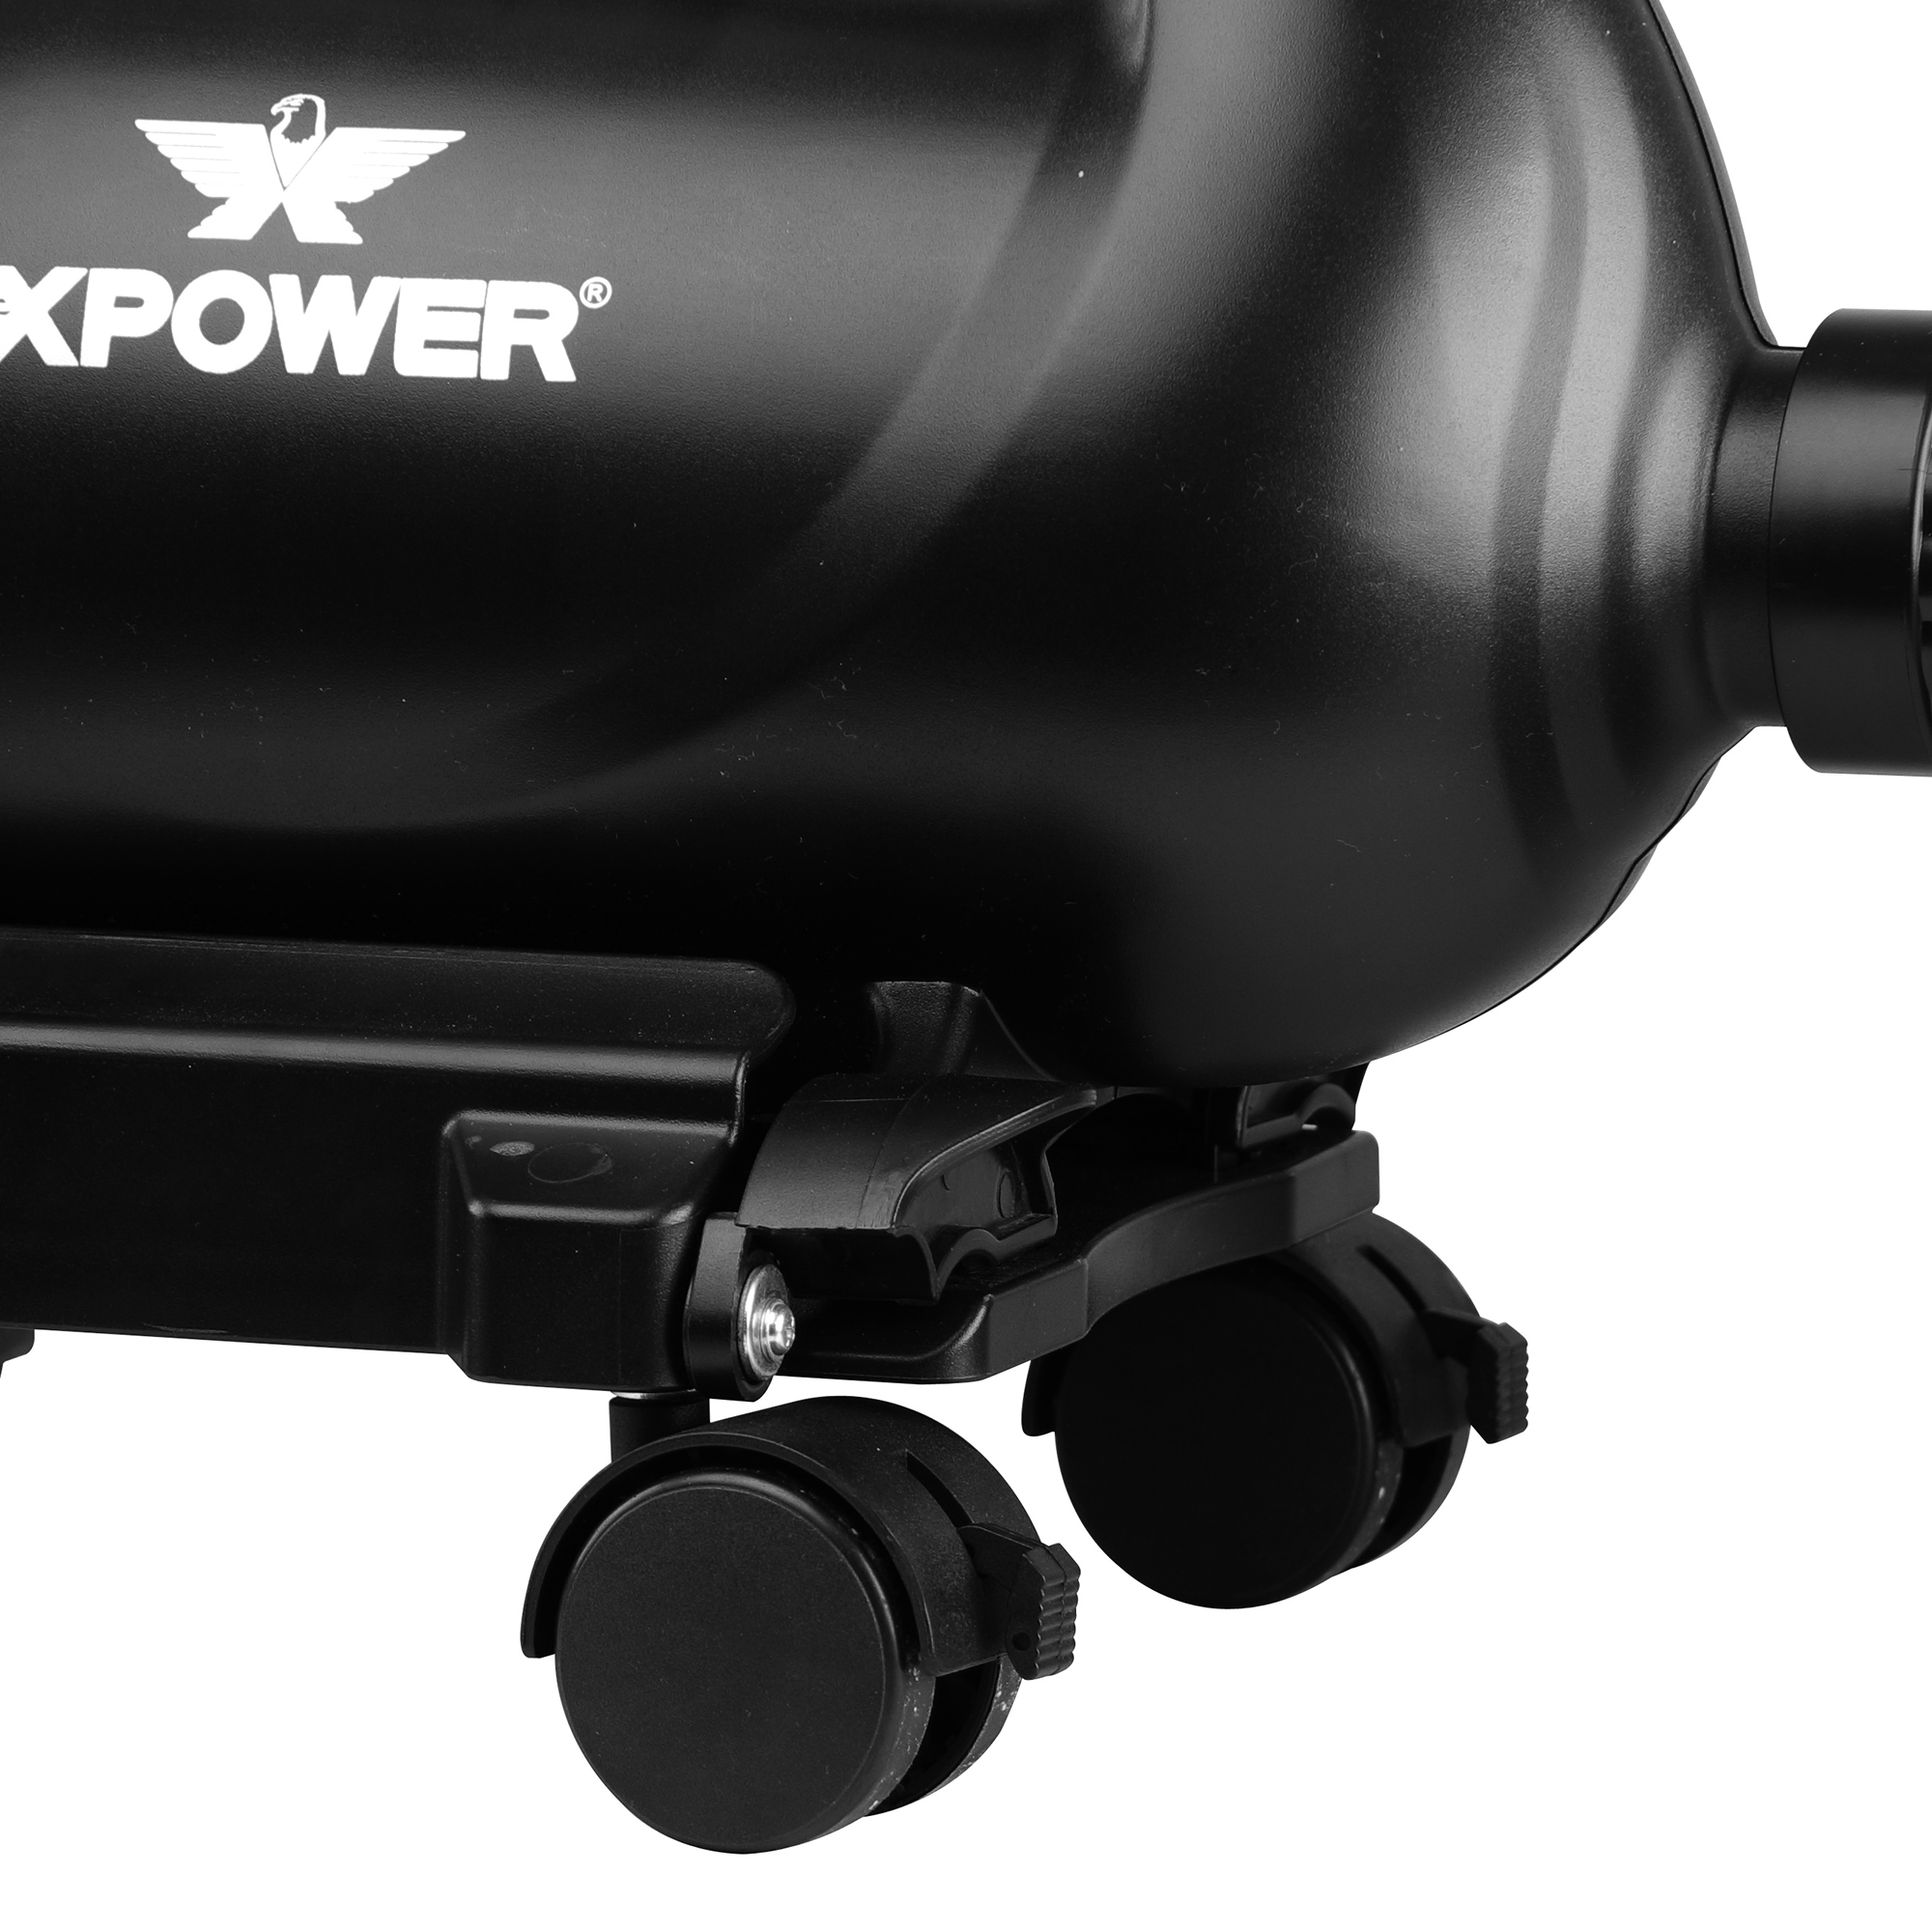 Xpower A-16 auto trockner gebläse robuster kunststoff auto wasch  trockner/einstellbare geschwindigkeit/gefilterte luft leistungs  starke/flexible